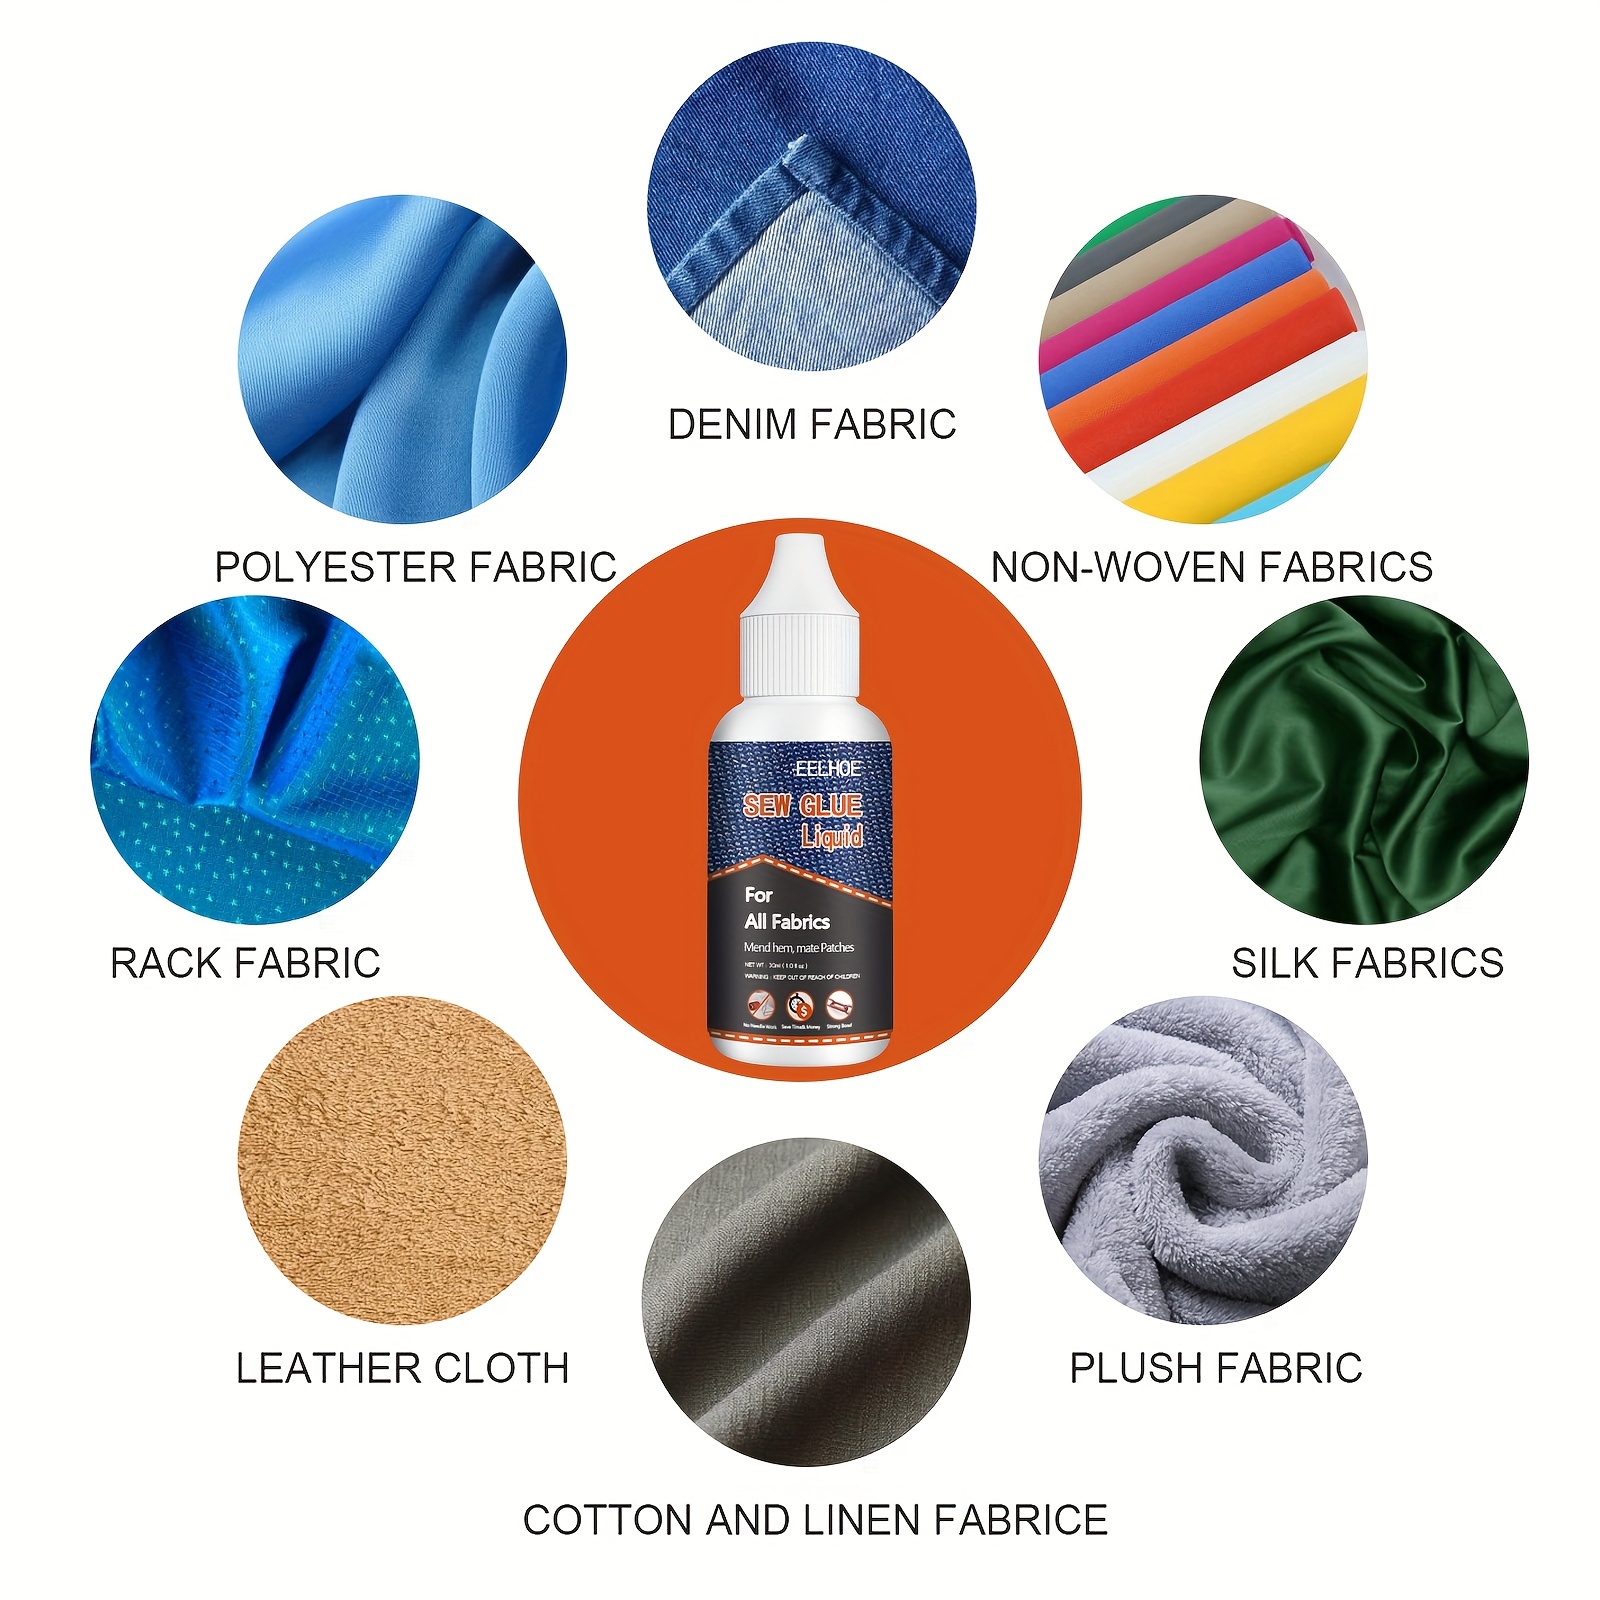 Bonding Glue Fabric, Sew Glue Liquid Repair, Fabric Sew Glue Liquid